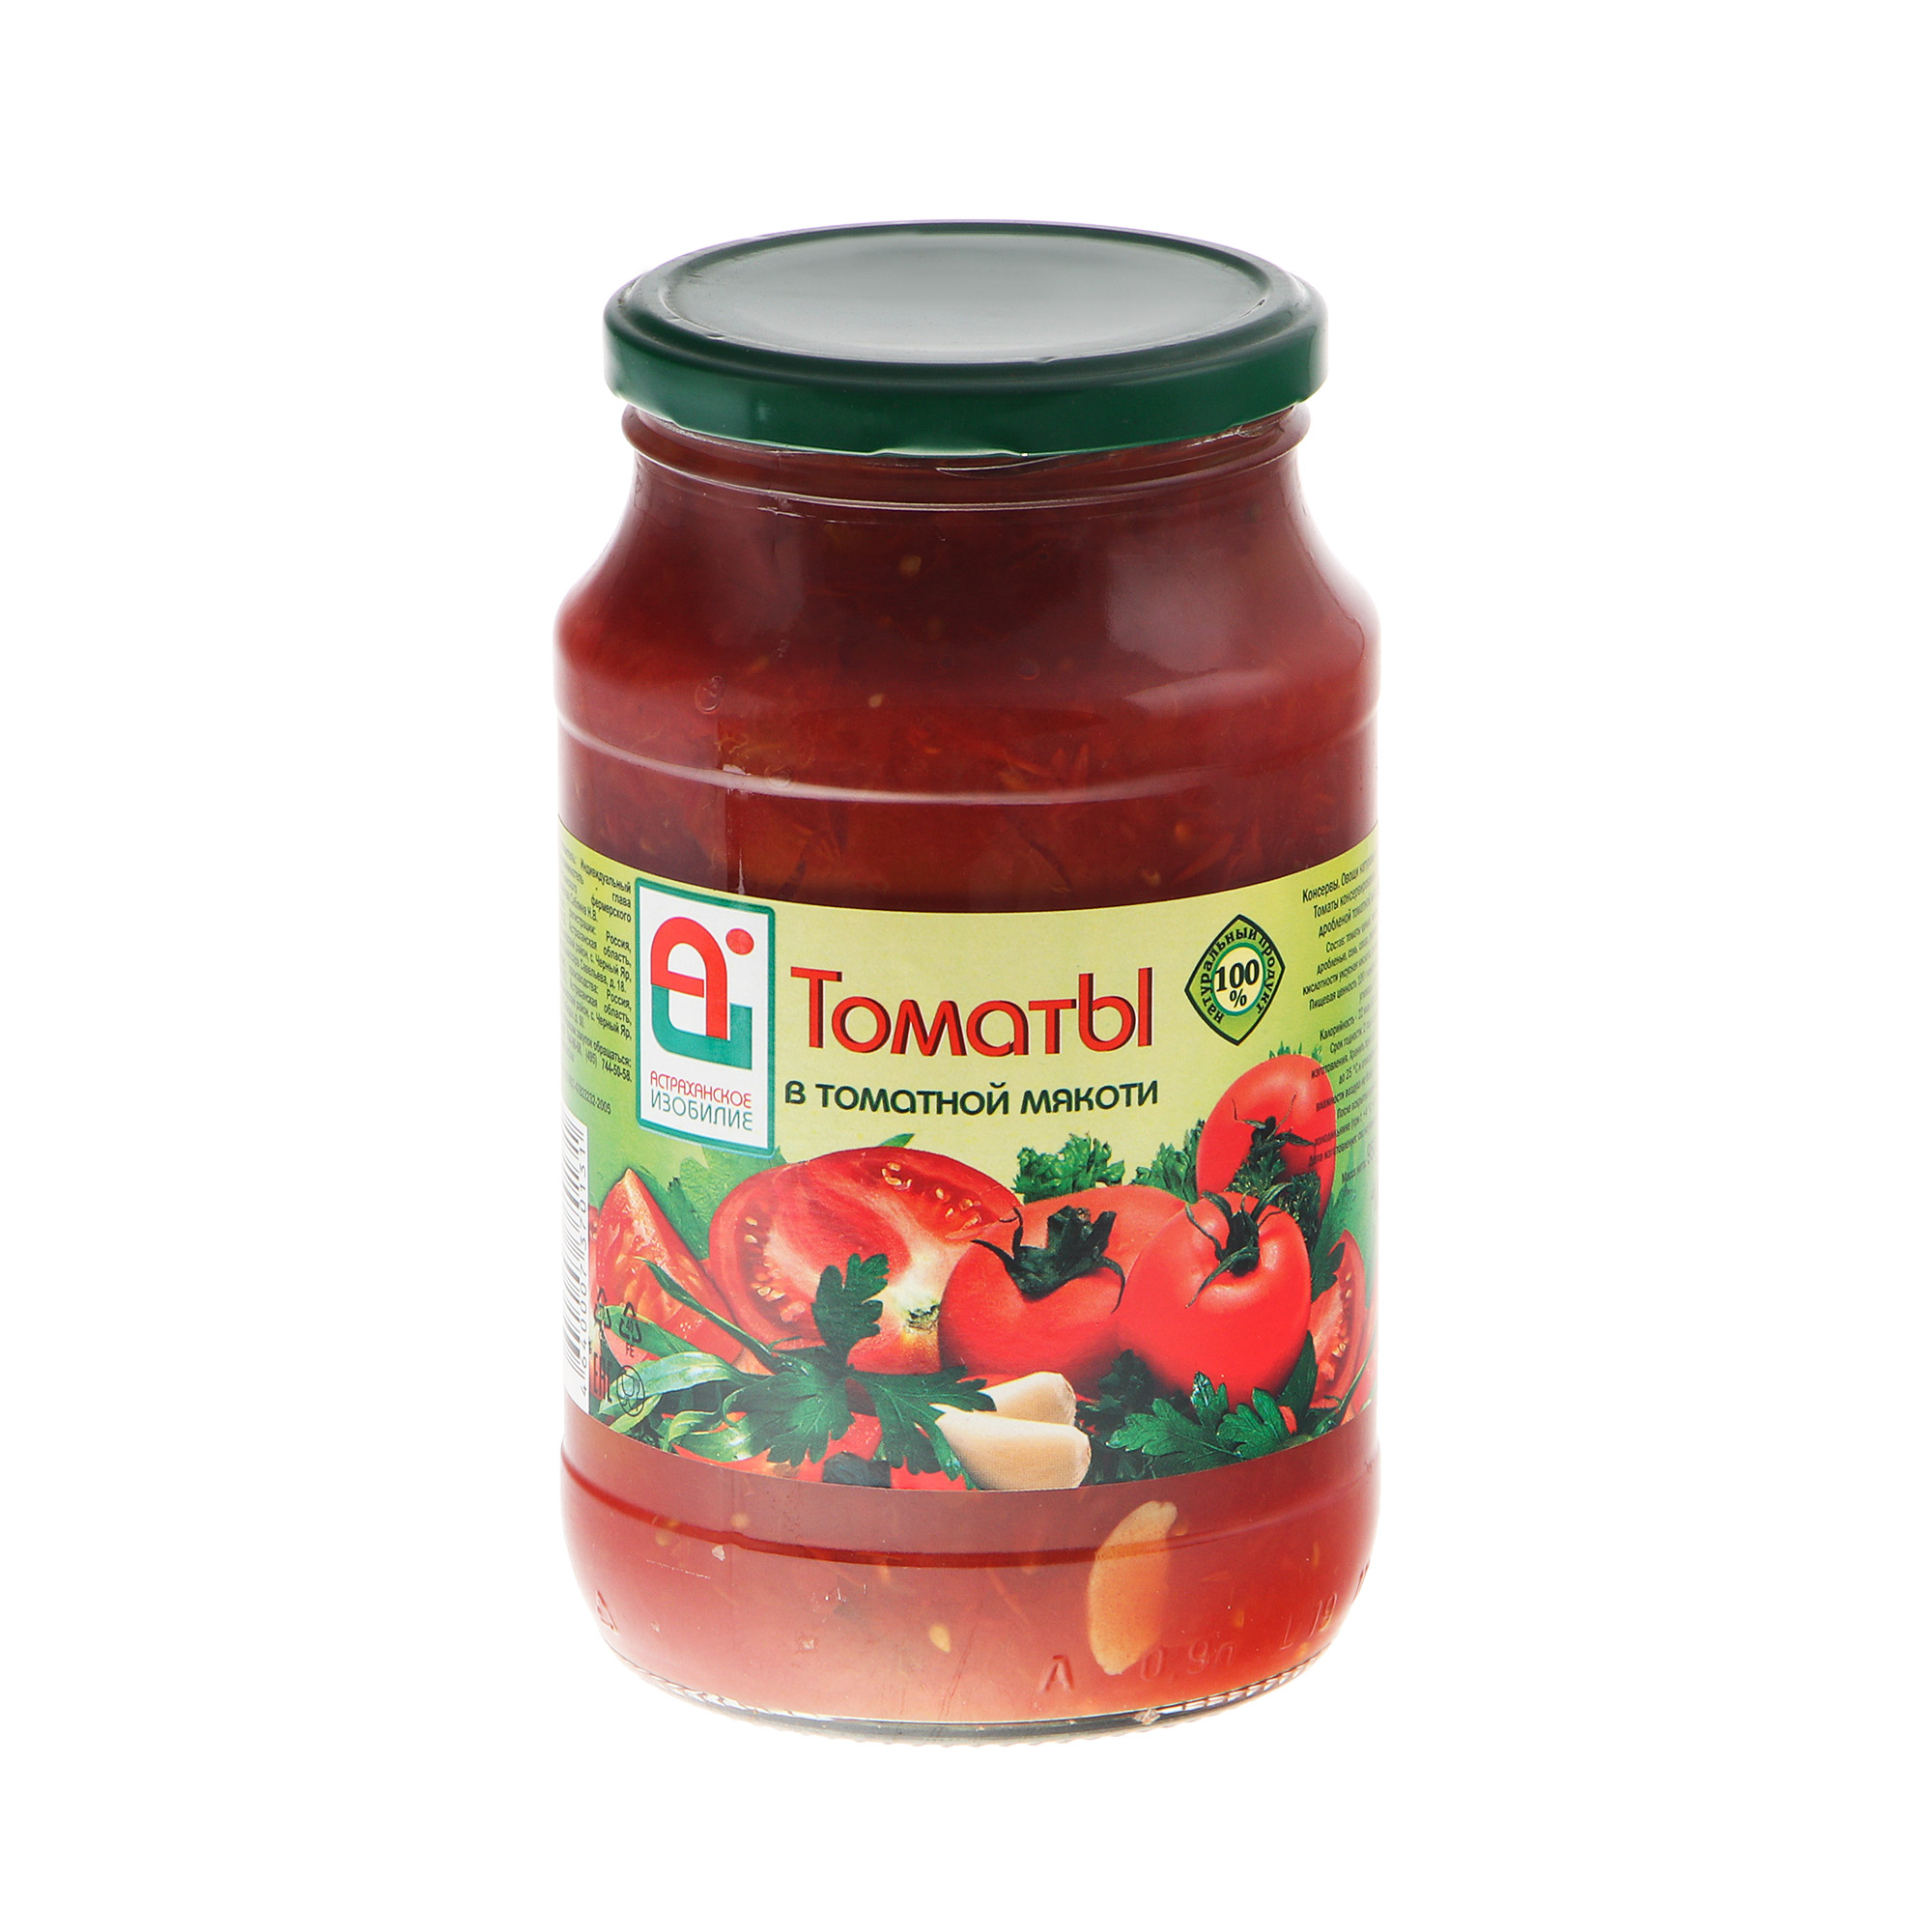 Томаты Астраханское Изобилие в мякоти 950 г набор фитингов для теплого капельного полива томаты перцы баклажаны